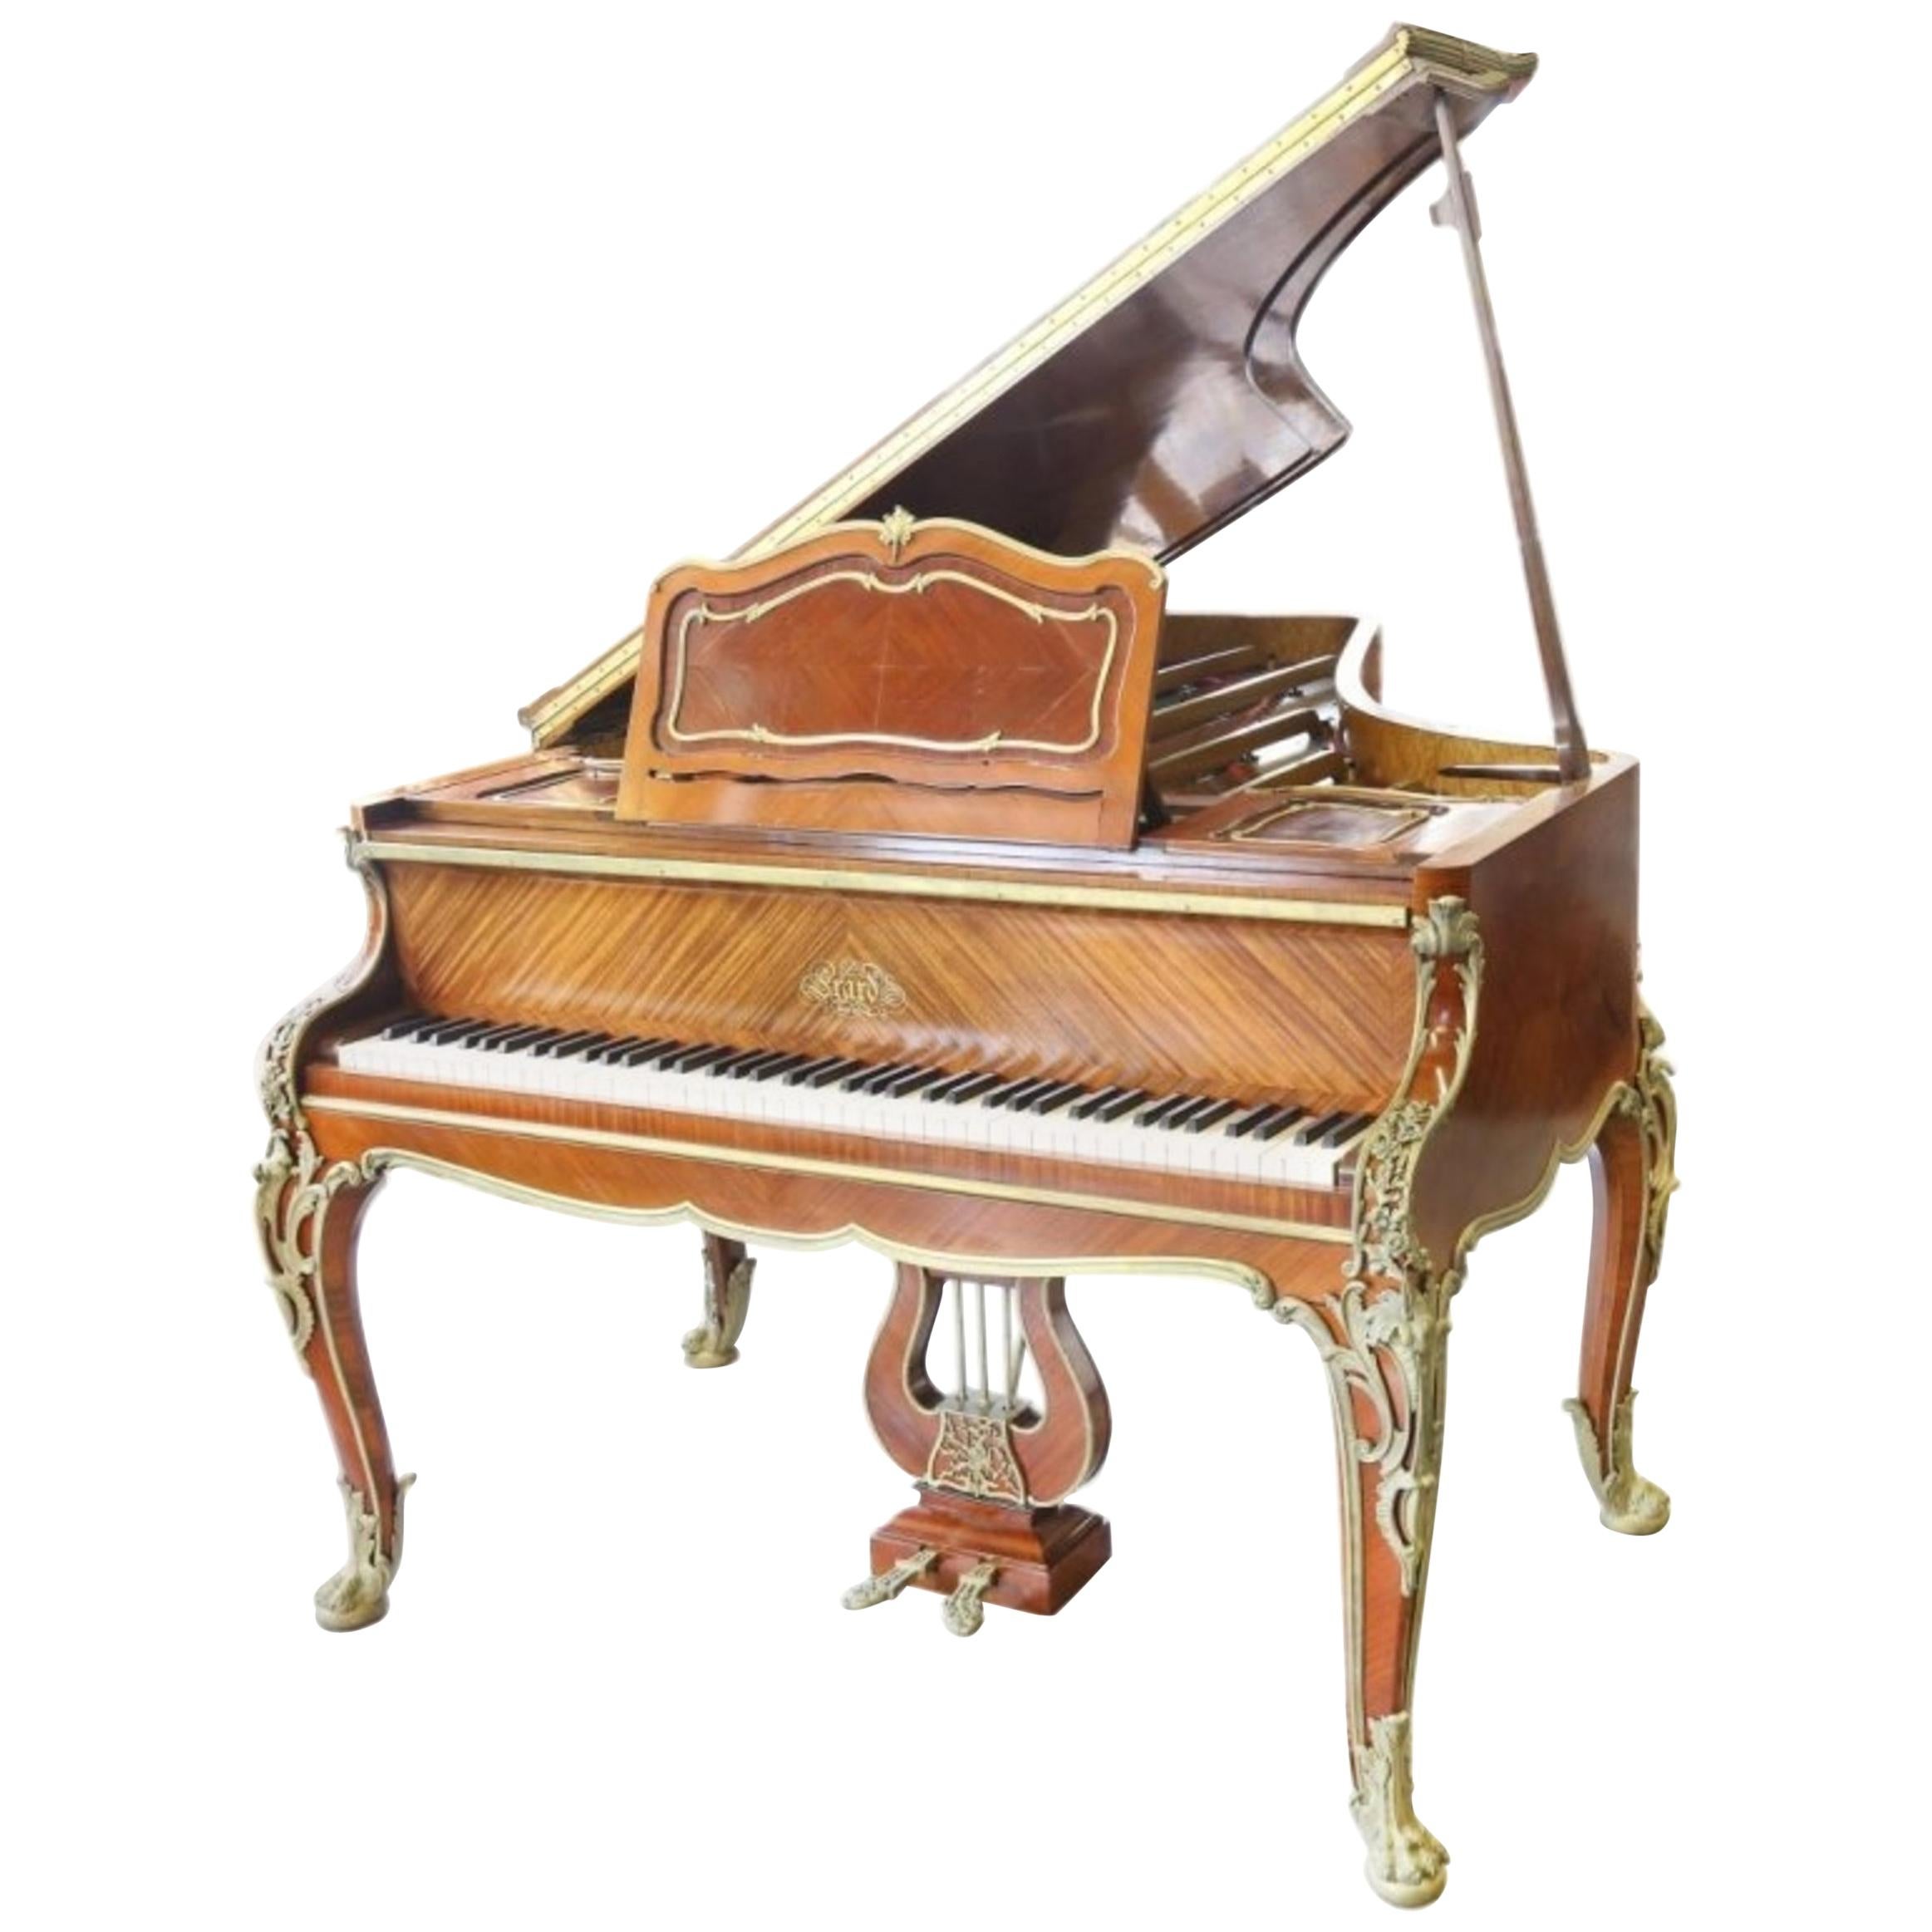 Très beau piano de style Louis XV par Francois Linke, signé, estampillé par Zwiener